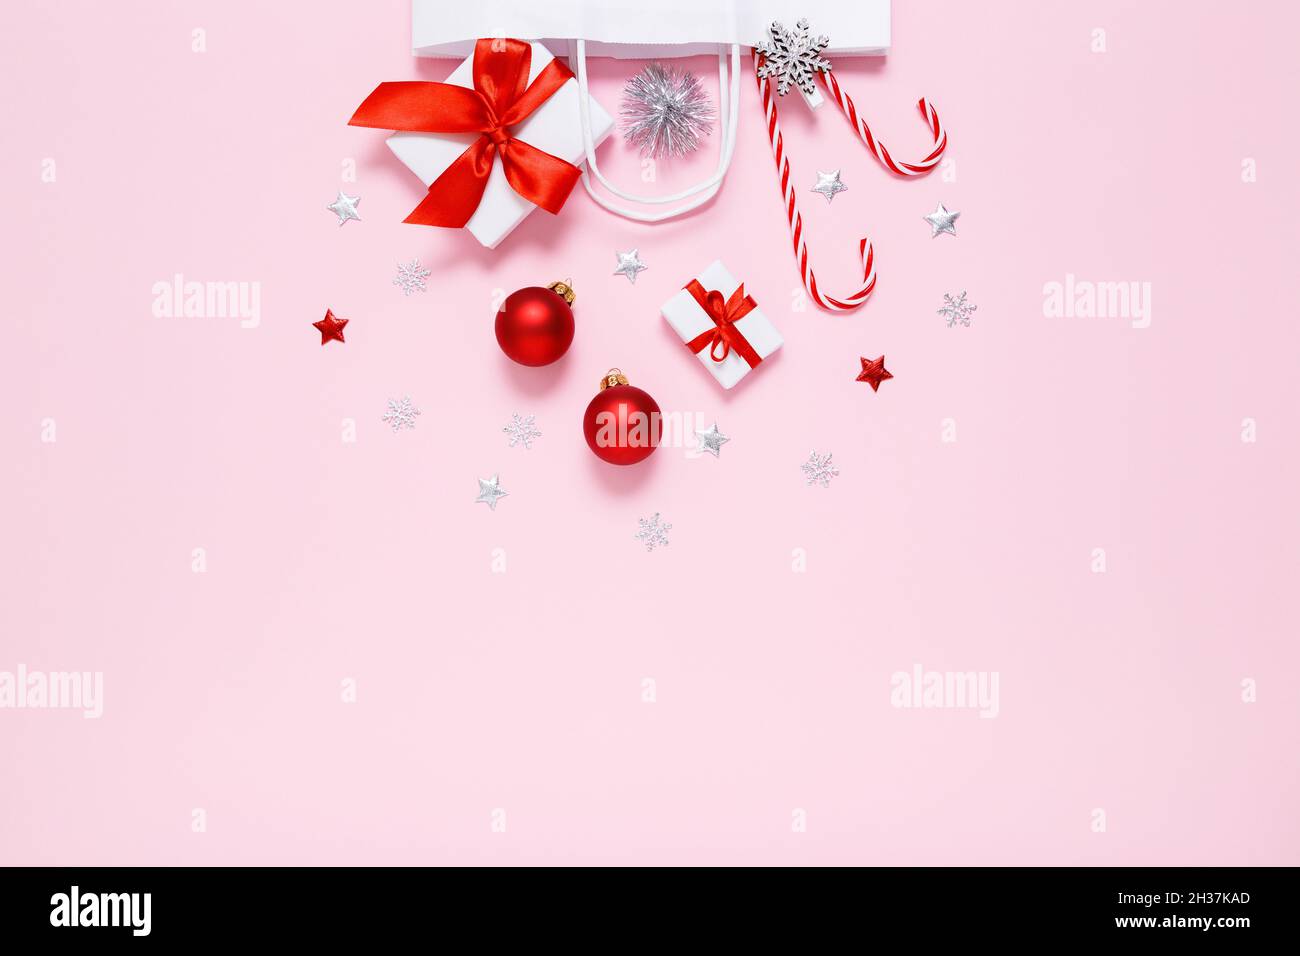 Weihnachten, Neujahr. Weiße Papiertüte mit Geschenken, süßen Bonbons, Weihnachtsdekorationen, roten Kugeln, silbernen Glitzer-Konfetti-Sternen auf pastellrosa Hintergrund. Flach liegend, Kopierplatz Stockfoto